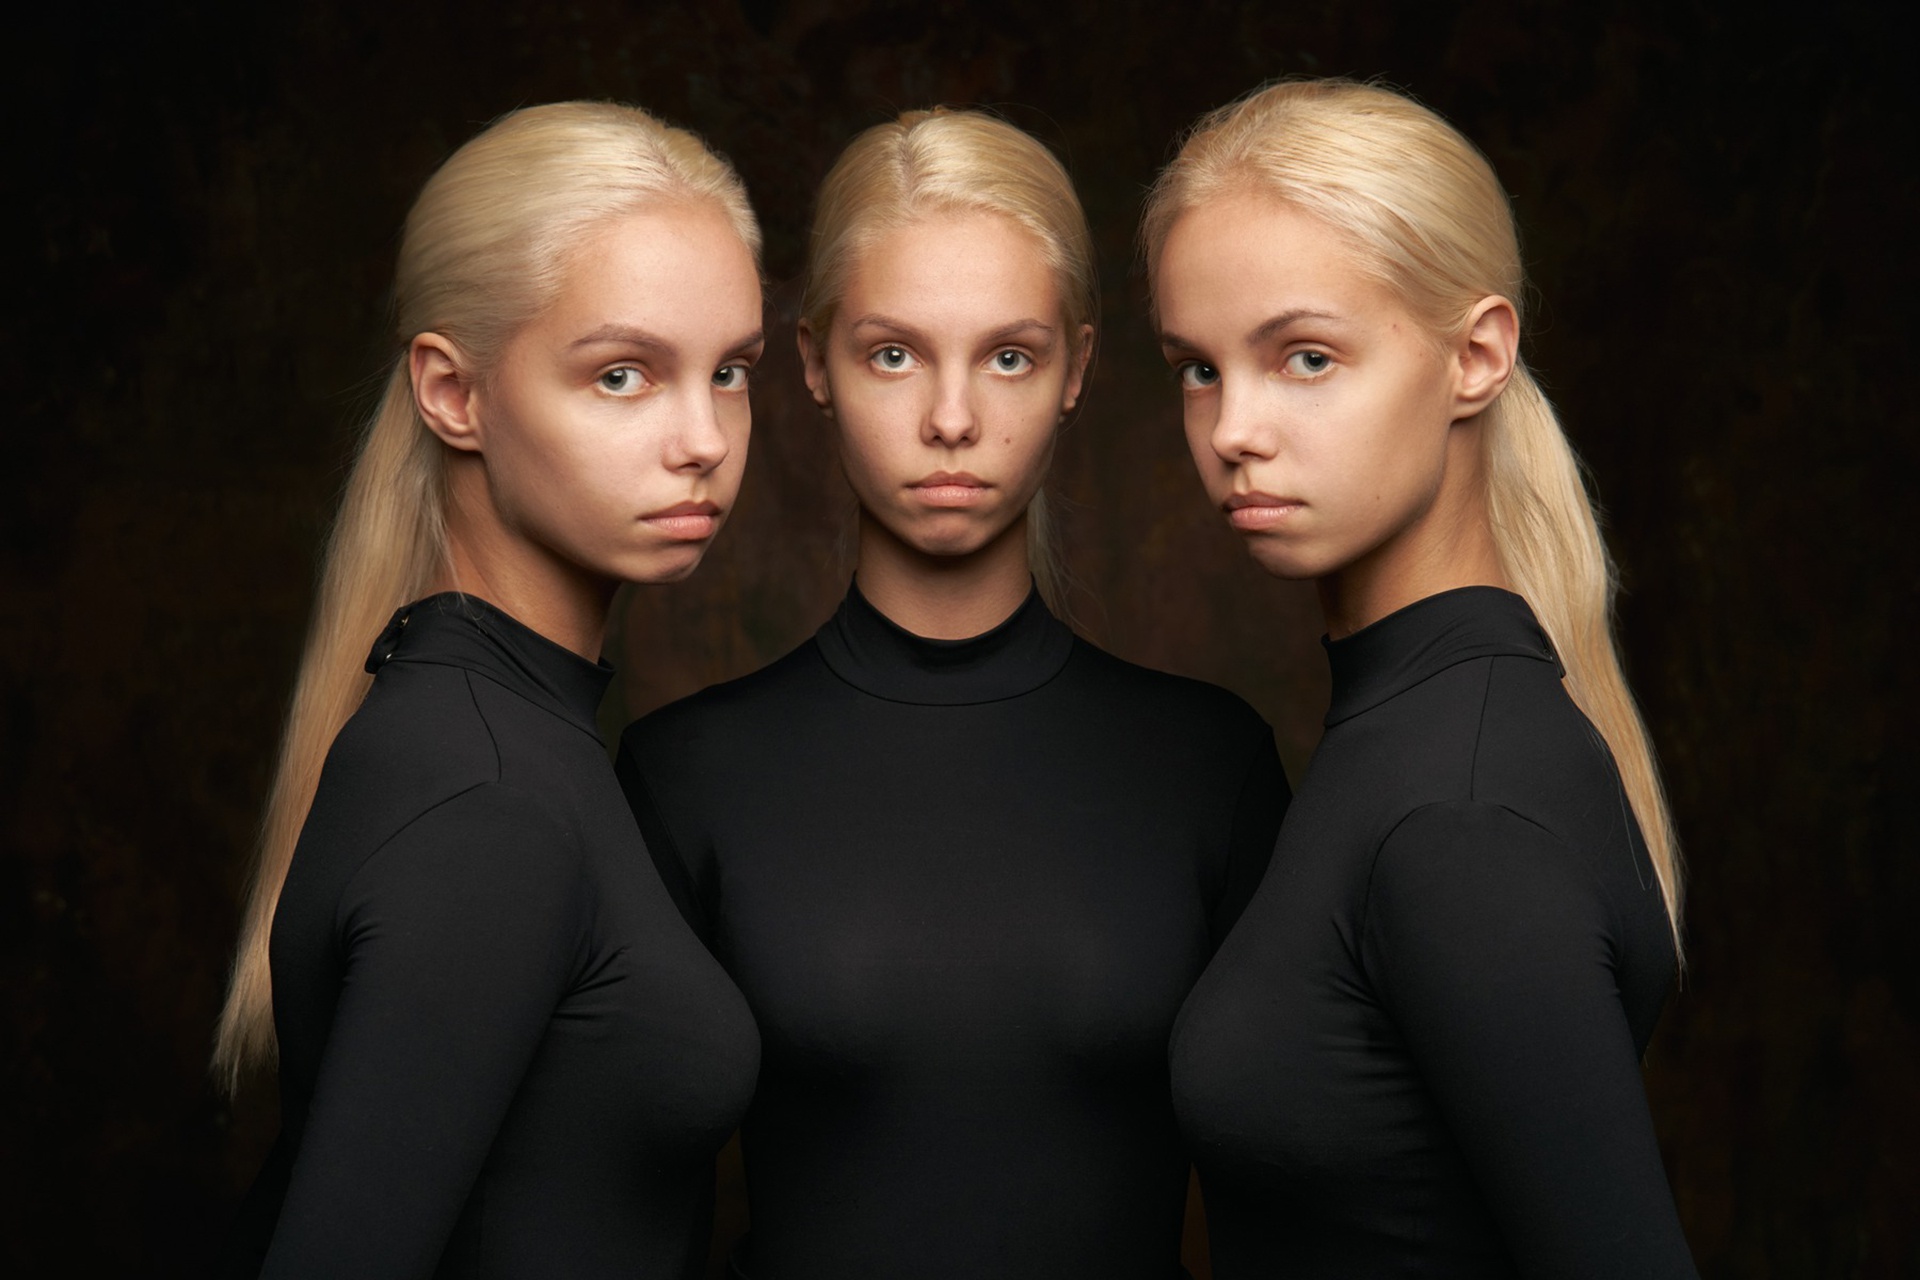 Triplets Blonde Women Portrait Model Sisters Frontal View 1920x1280